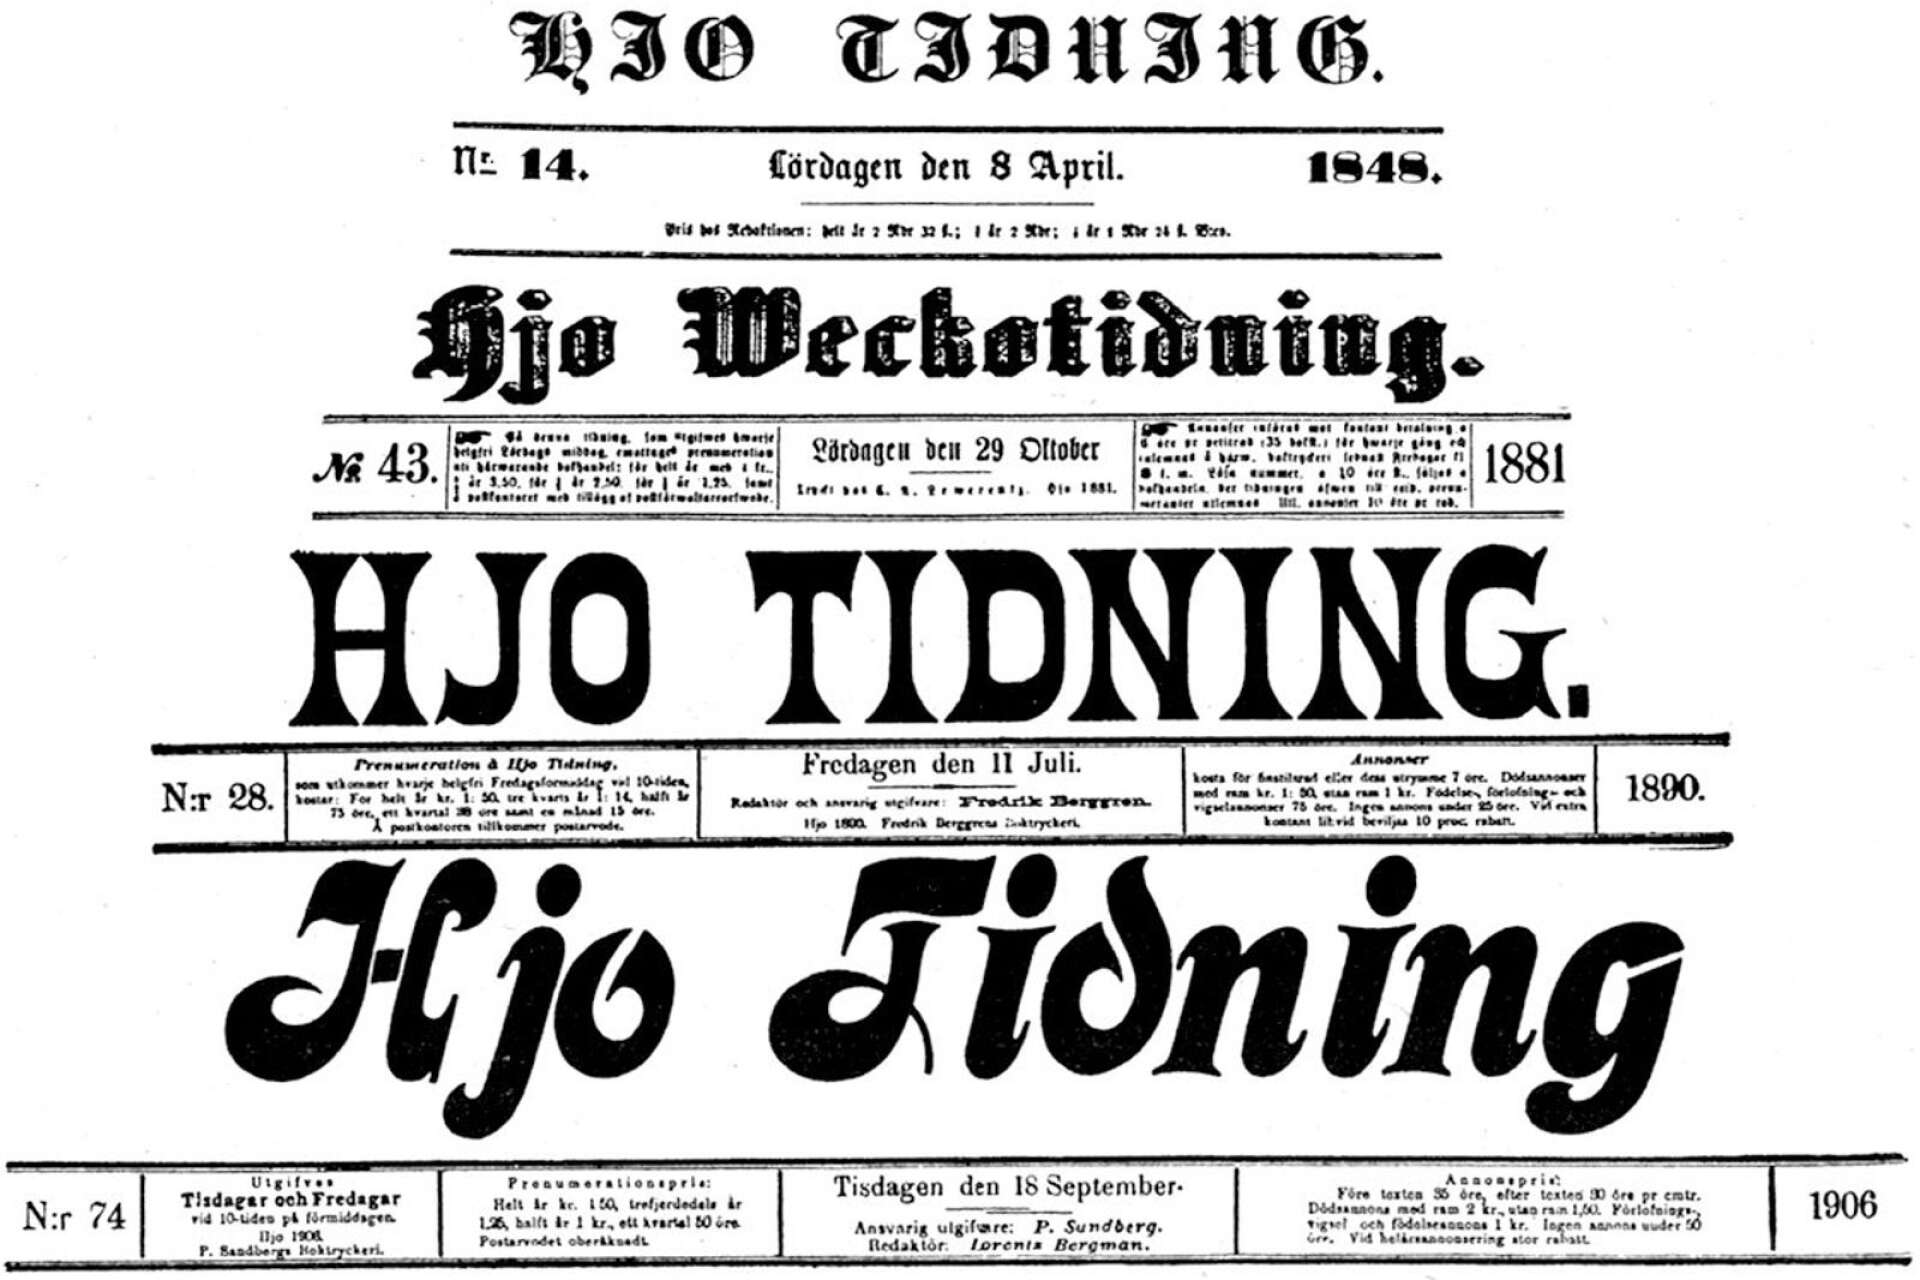 Hjo Tidning fyller 175 år och hade olika ägare och namn till en början. Bland annat Hjo Weckotidning innan man återtog ursprungsnamnet Hjo Tidning. Här exempel på några tidiga vinjetter.